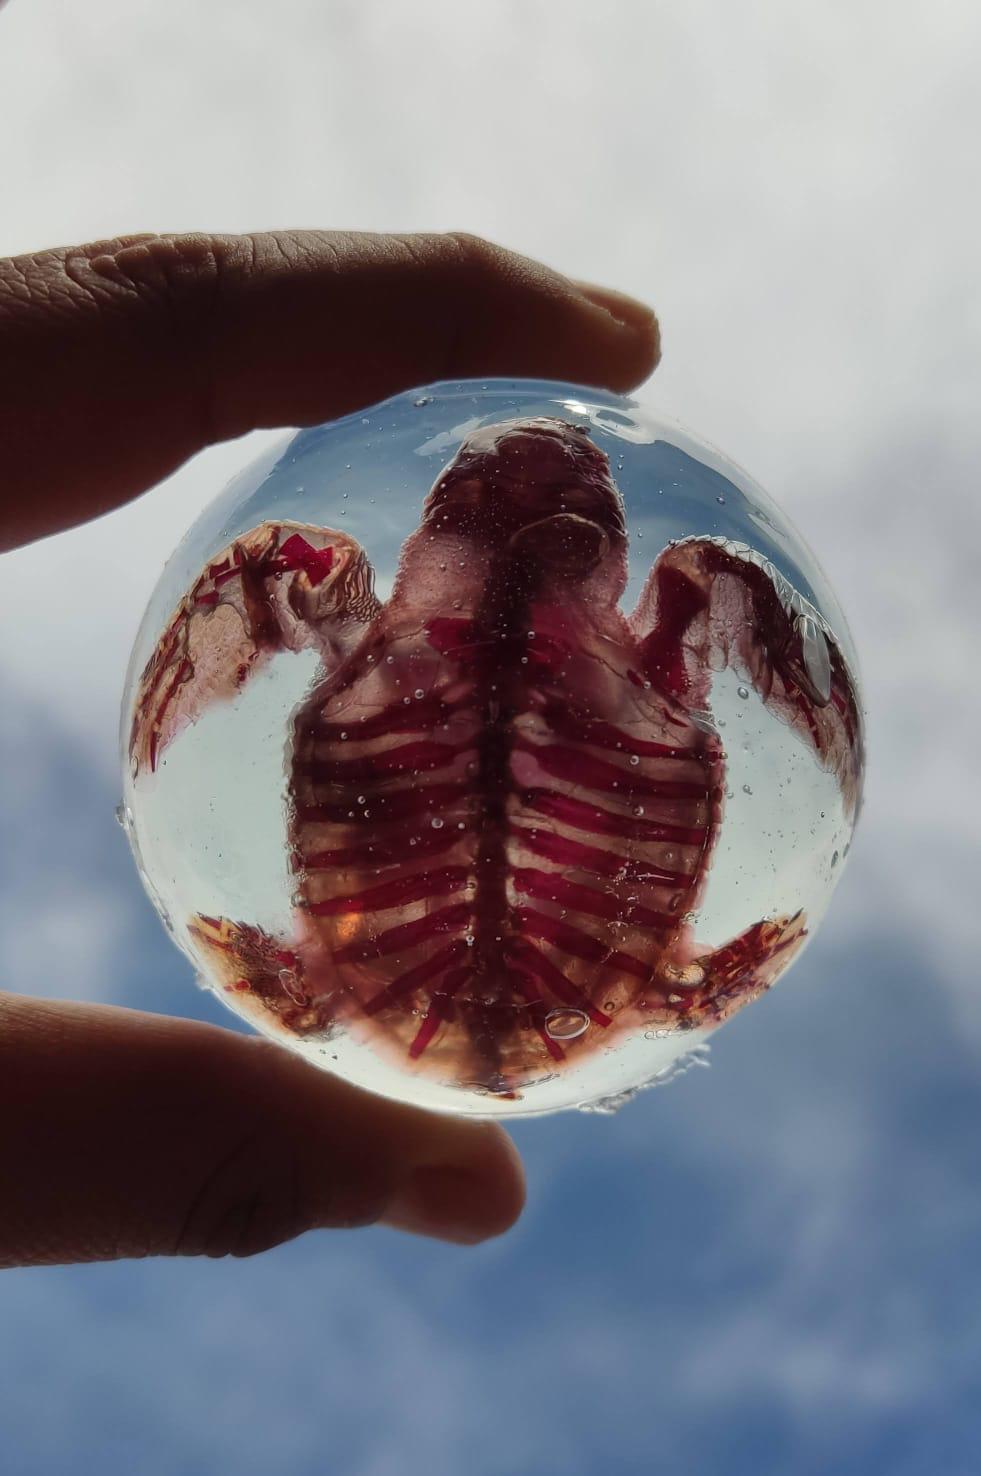 $!Alumna de la UAS consigue método para transparentar órganos y piel de tortugas marinas embrionarias